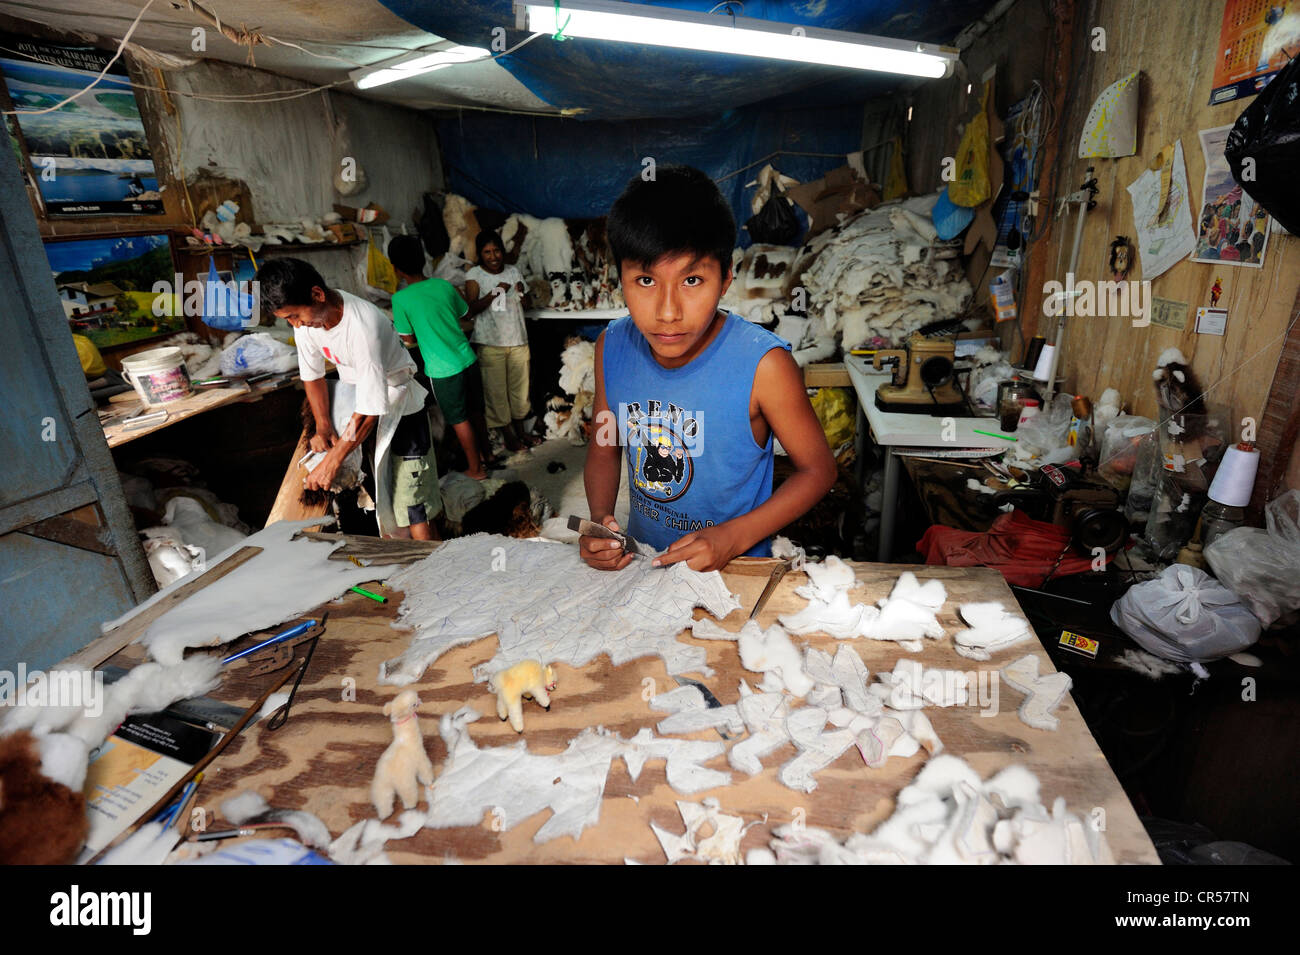 Trabajo infantil, niño producir juguetes suaves y alfombras de piel de alpaca en un pequeño negocio familiar, Pachamac, Lima, Perú. Foto de stock